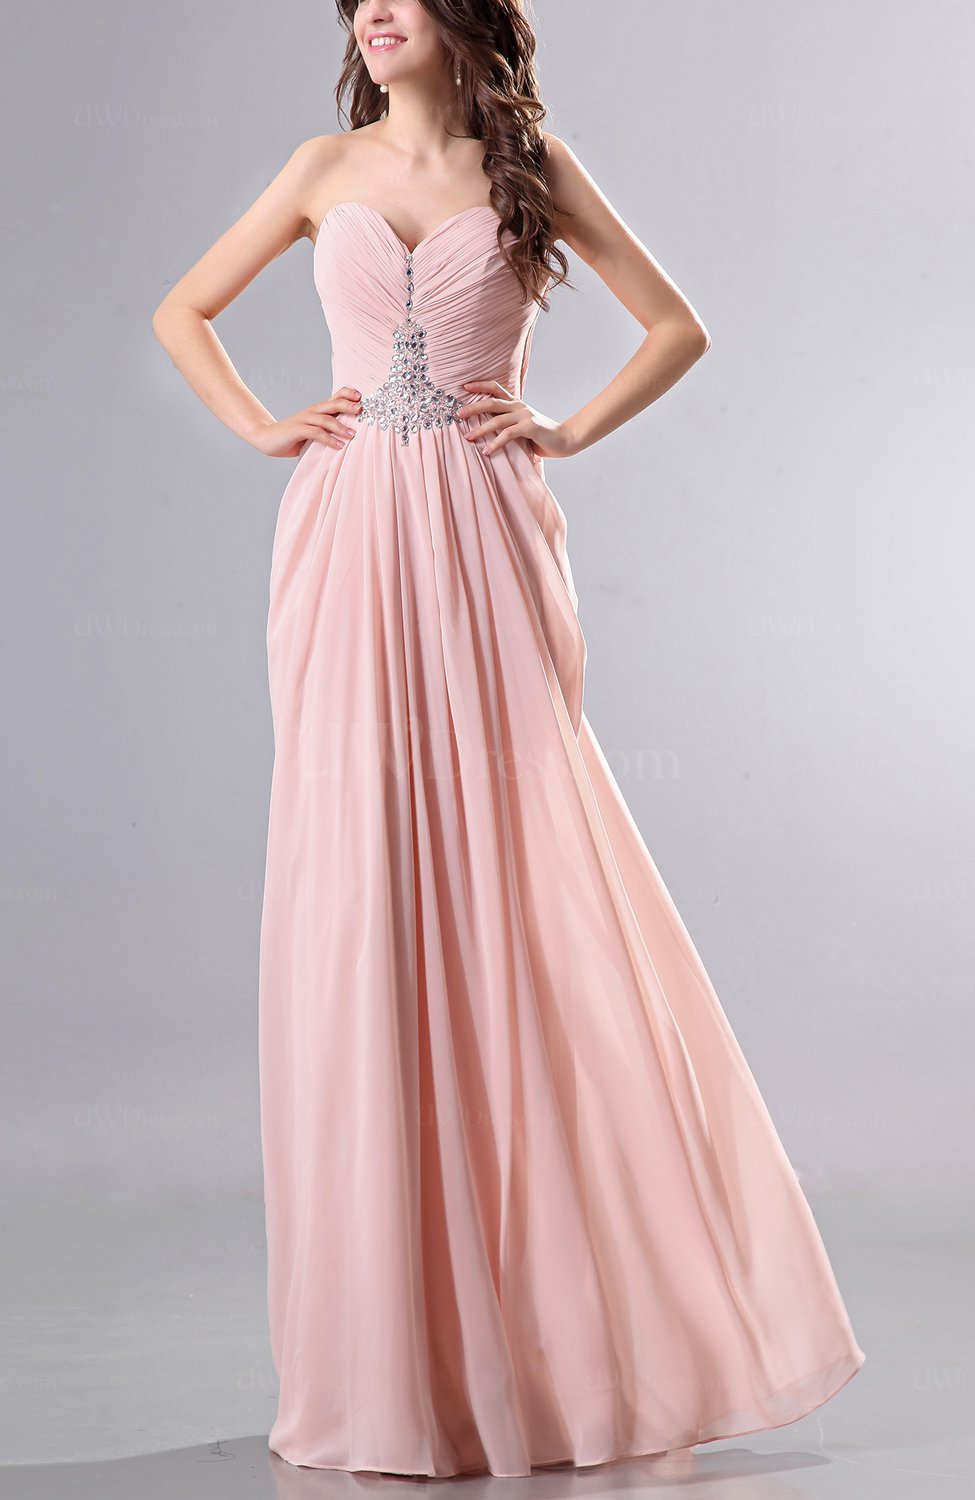 Romantic Design Princess Blush Pink Beaded Lace Applique 